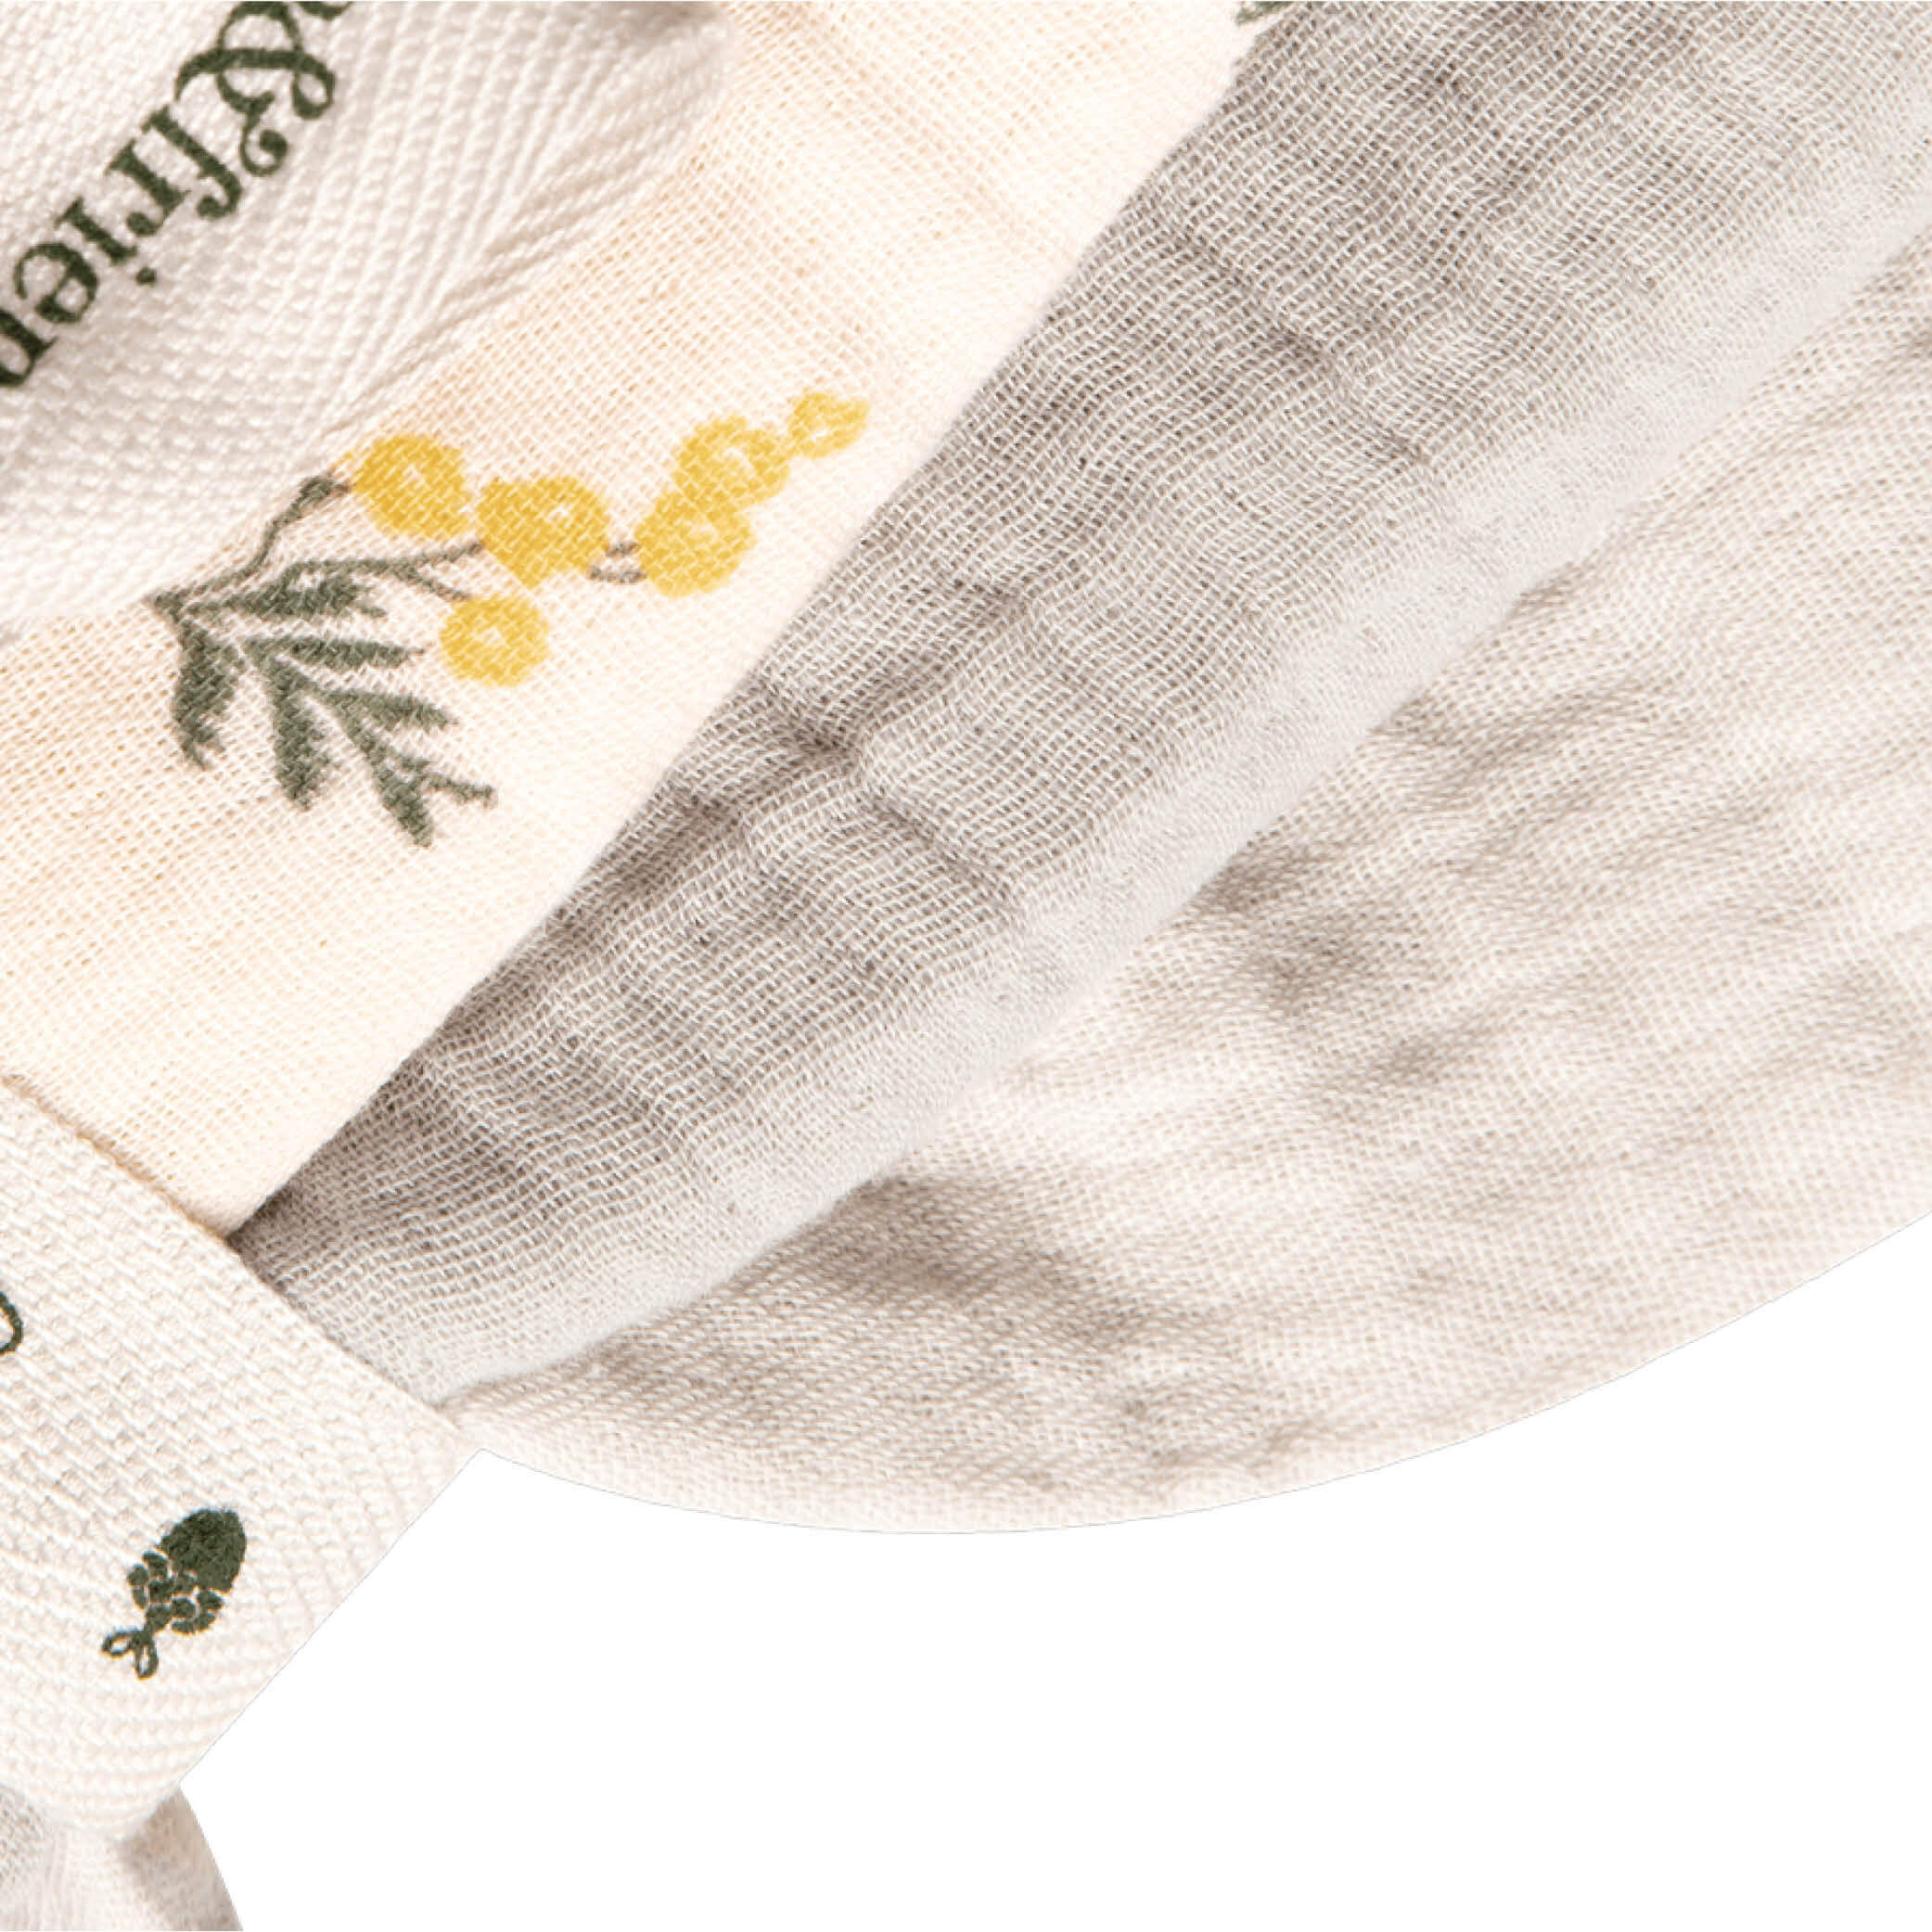 3er Set Baby und neugeborenen Swaddle und Spucktuch in mimosa von Garbo & Friends aus weicher und qualitativ hochwertigen Bio Musselin bei kinder & konsorten in Düsseldorf